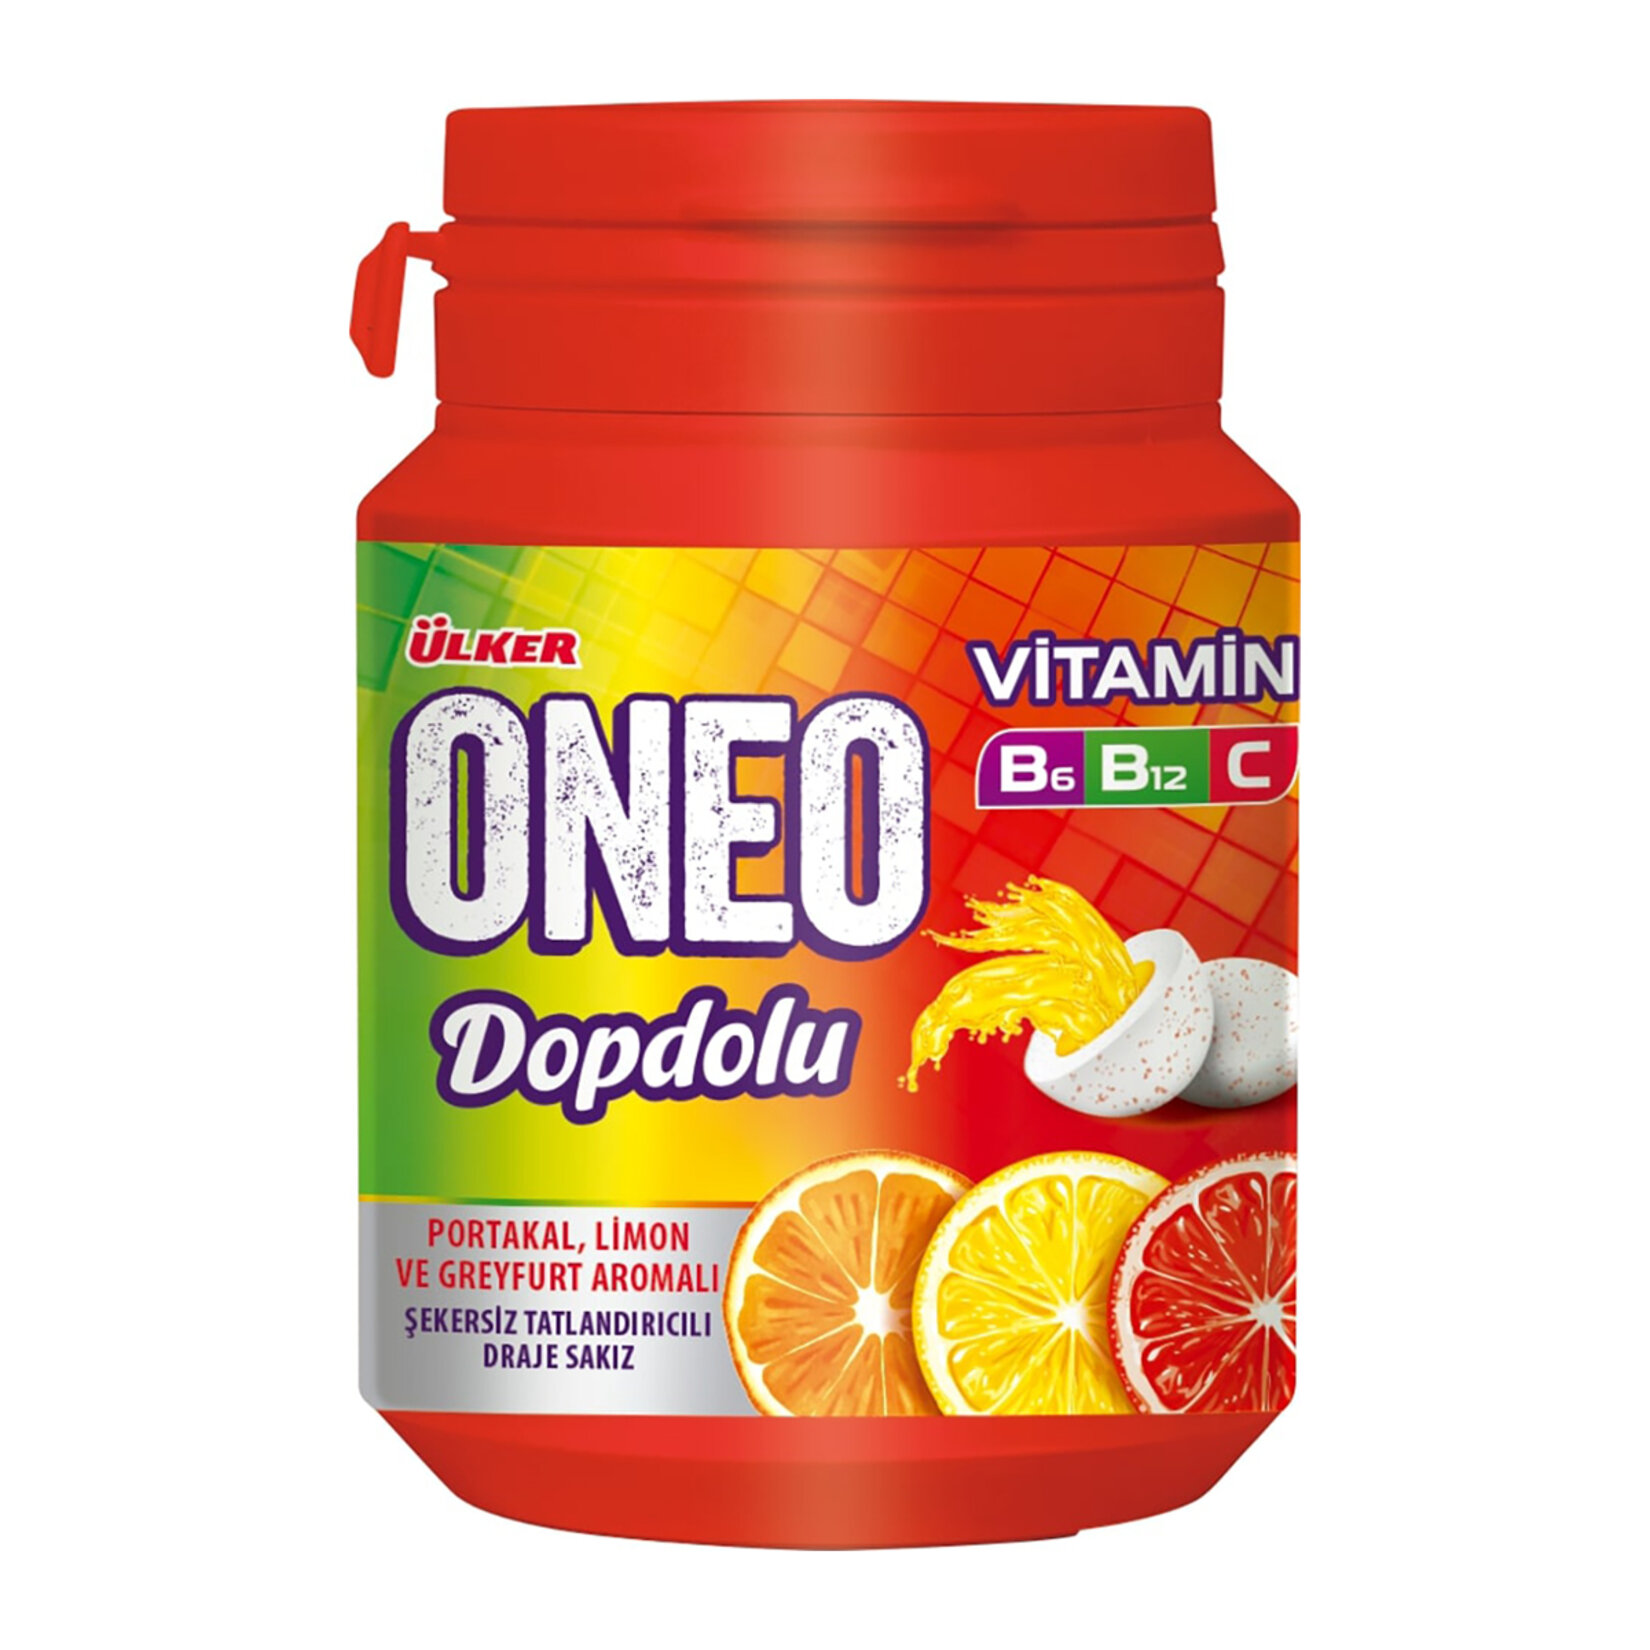 Ülker Oneo Dopdolu Vitamin Draje Meyve Aromalı Sakız 48G